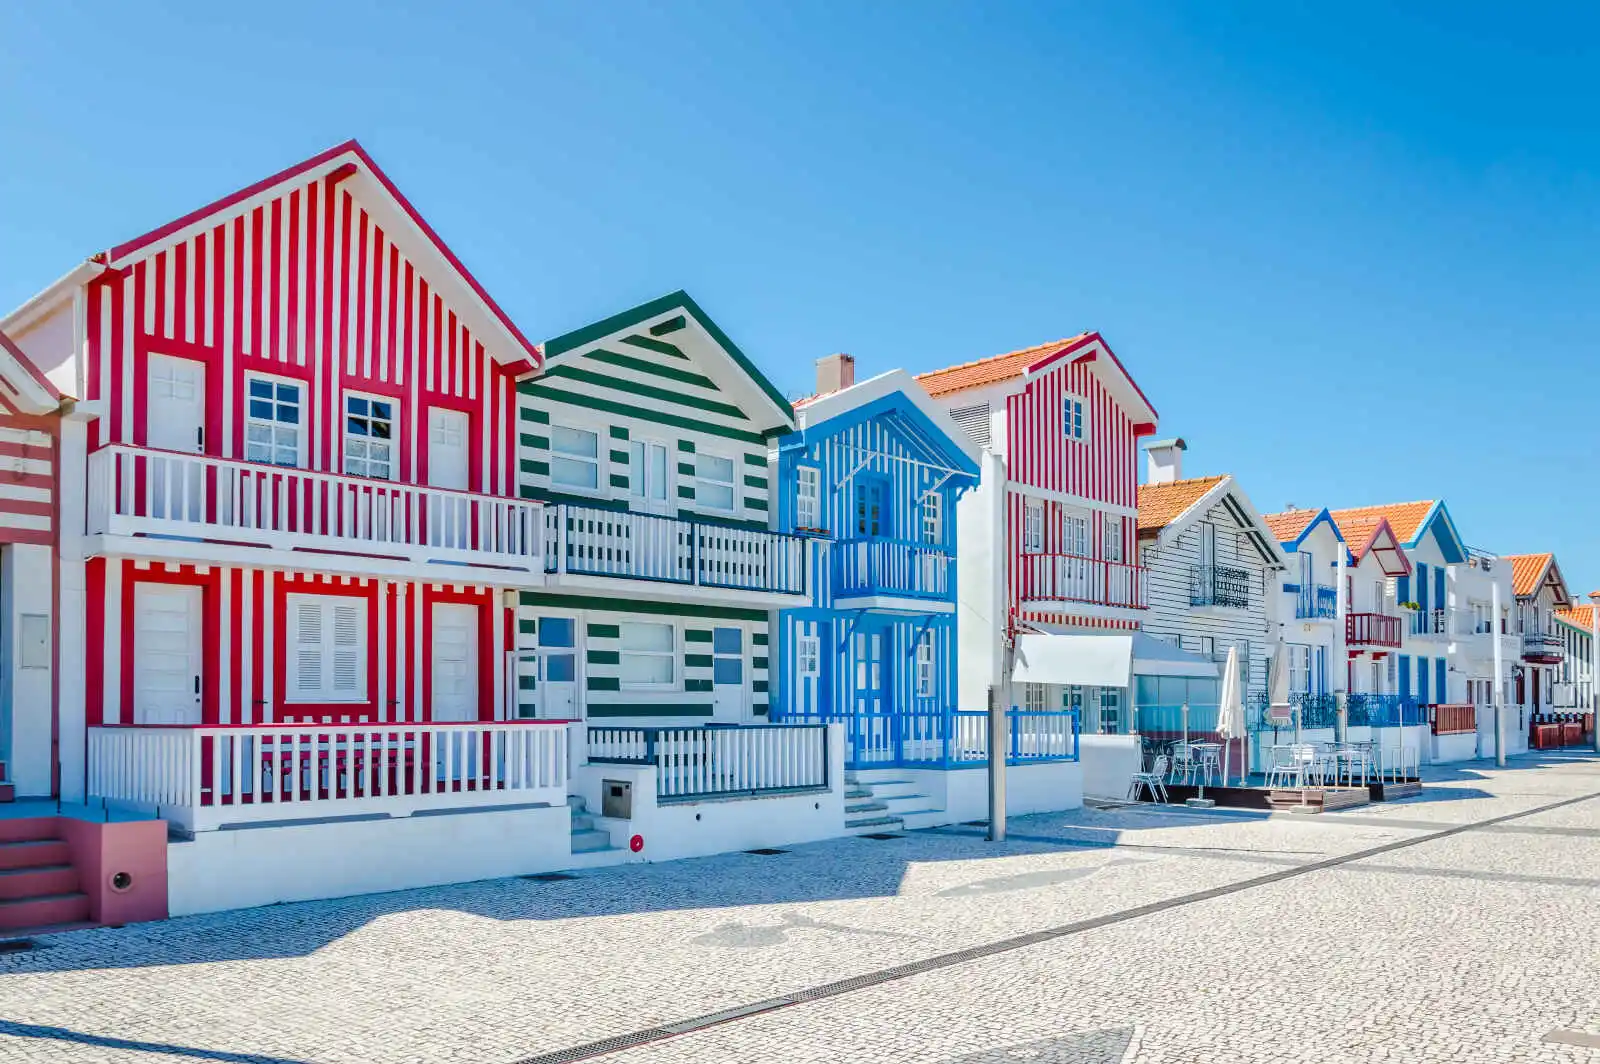 Palheiros (maisons à rayures colorées), Costa Nova do Prado, Nord, Portugal